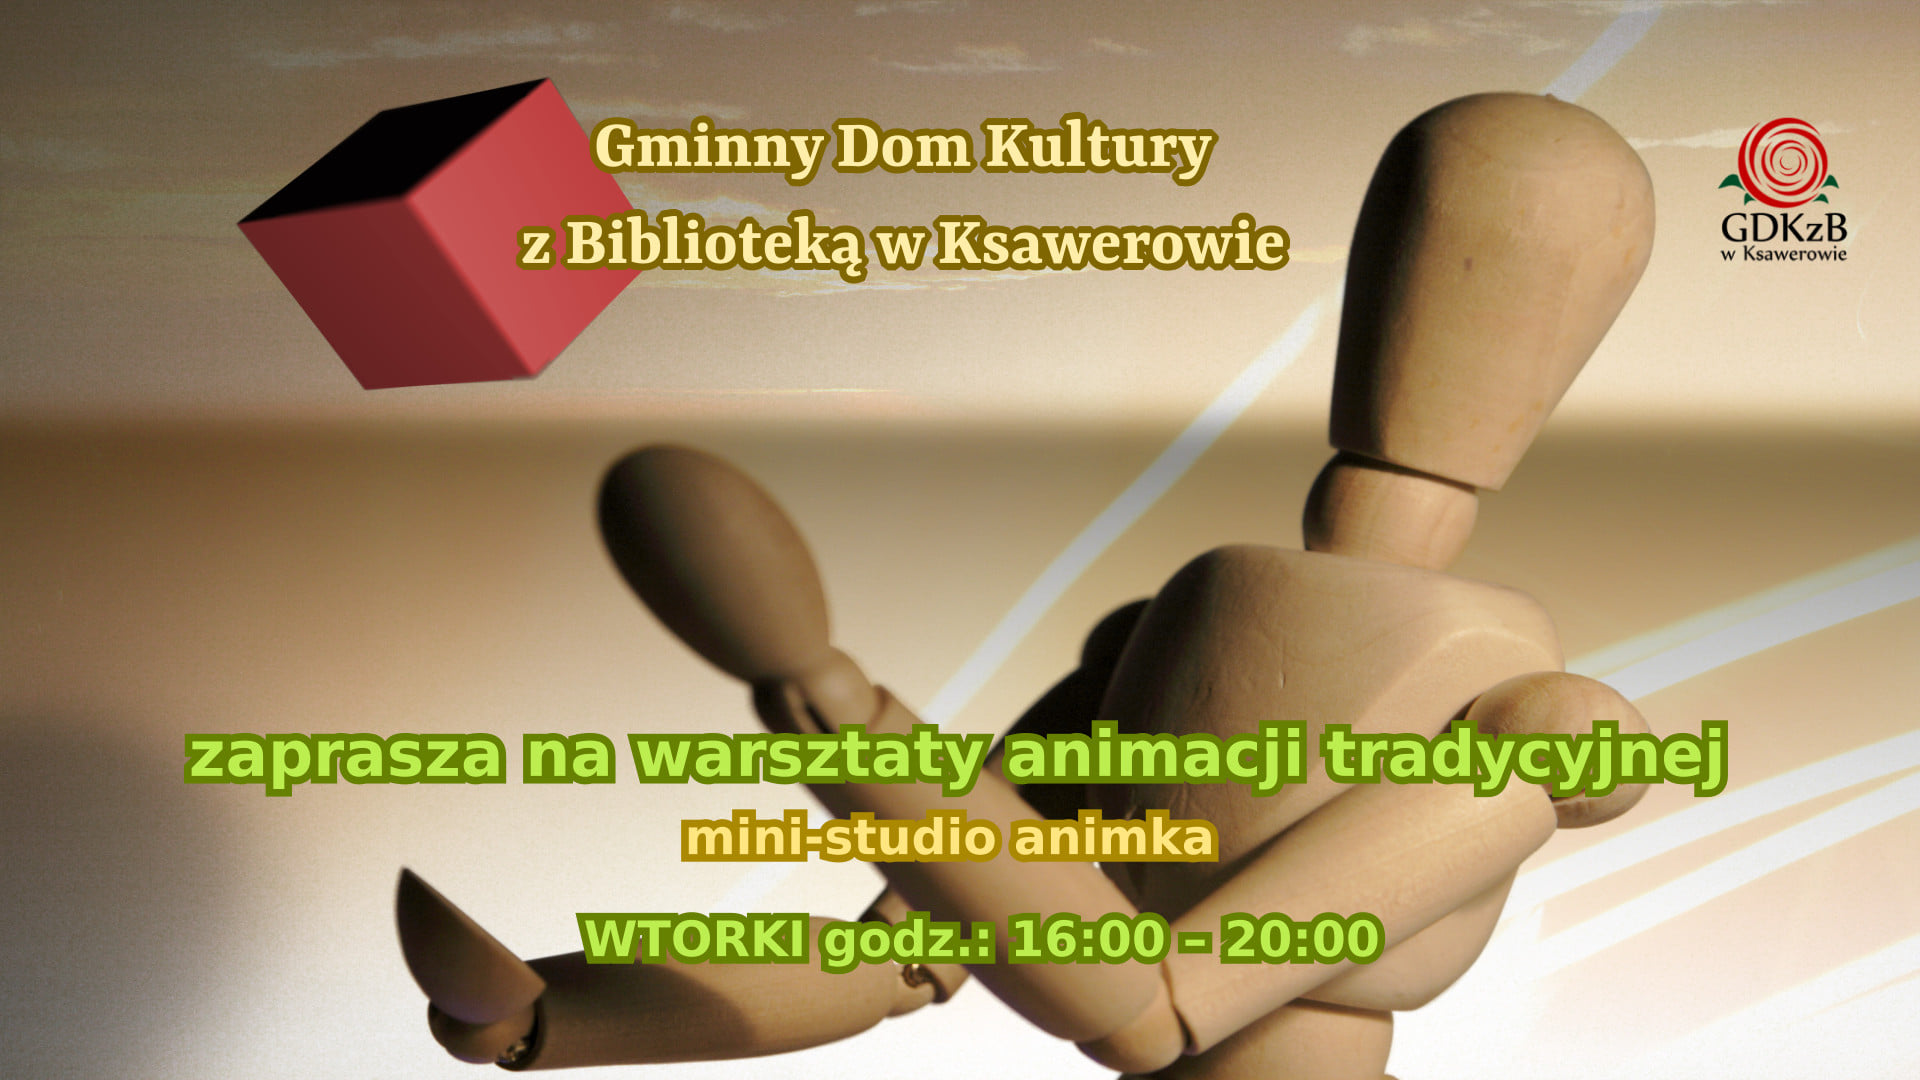 Gminny Dom Kultury z Biblioteką w Ksawerowe zaprasza na warsztaty animacji tradycyjnej - min studio animka, wtorek 16:00 - 20:00